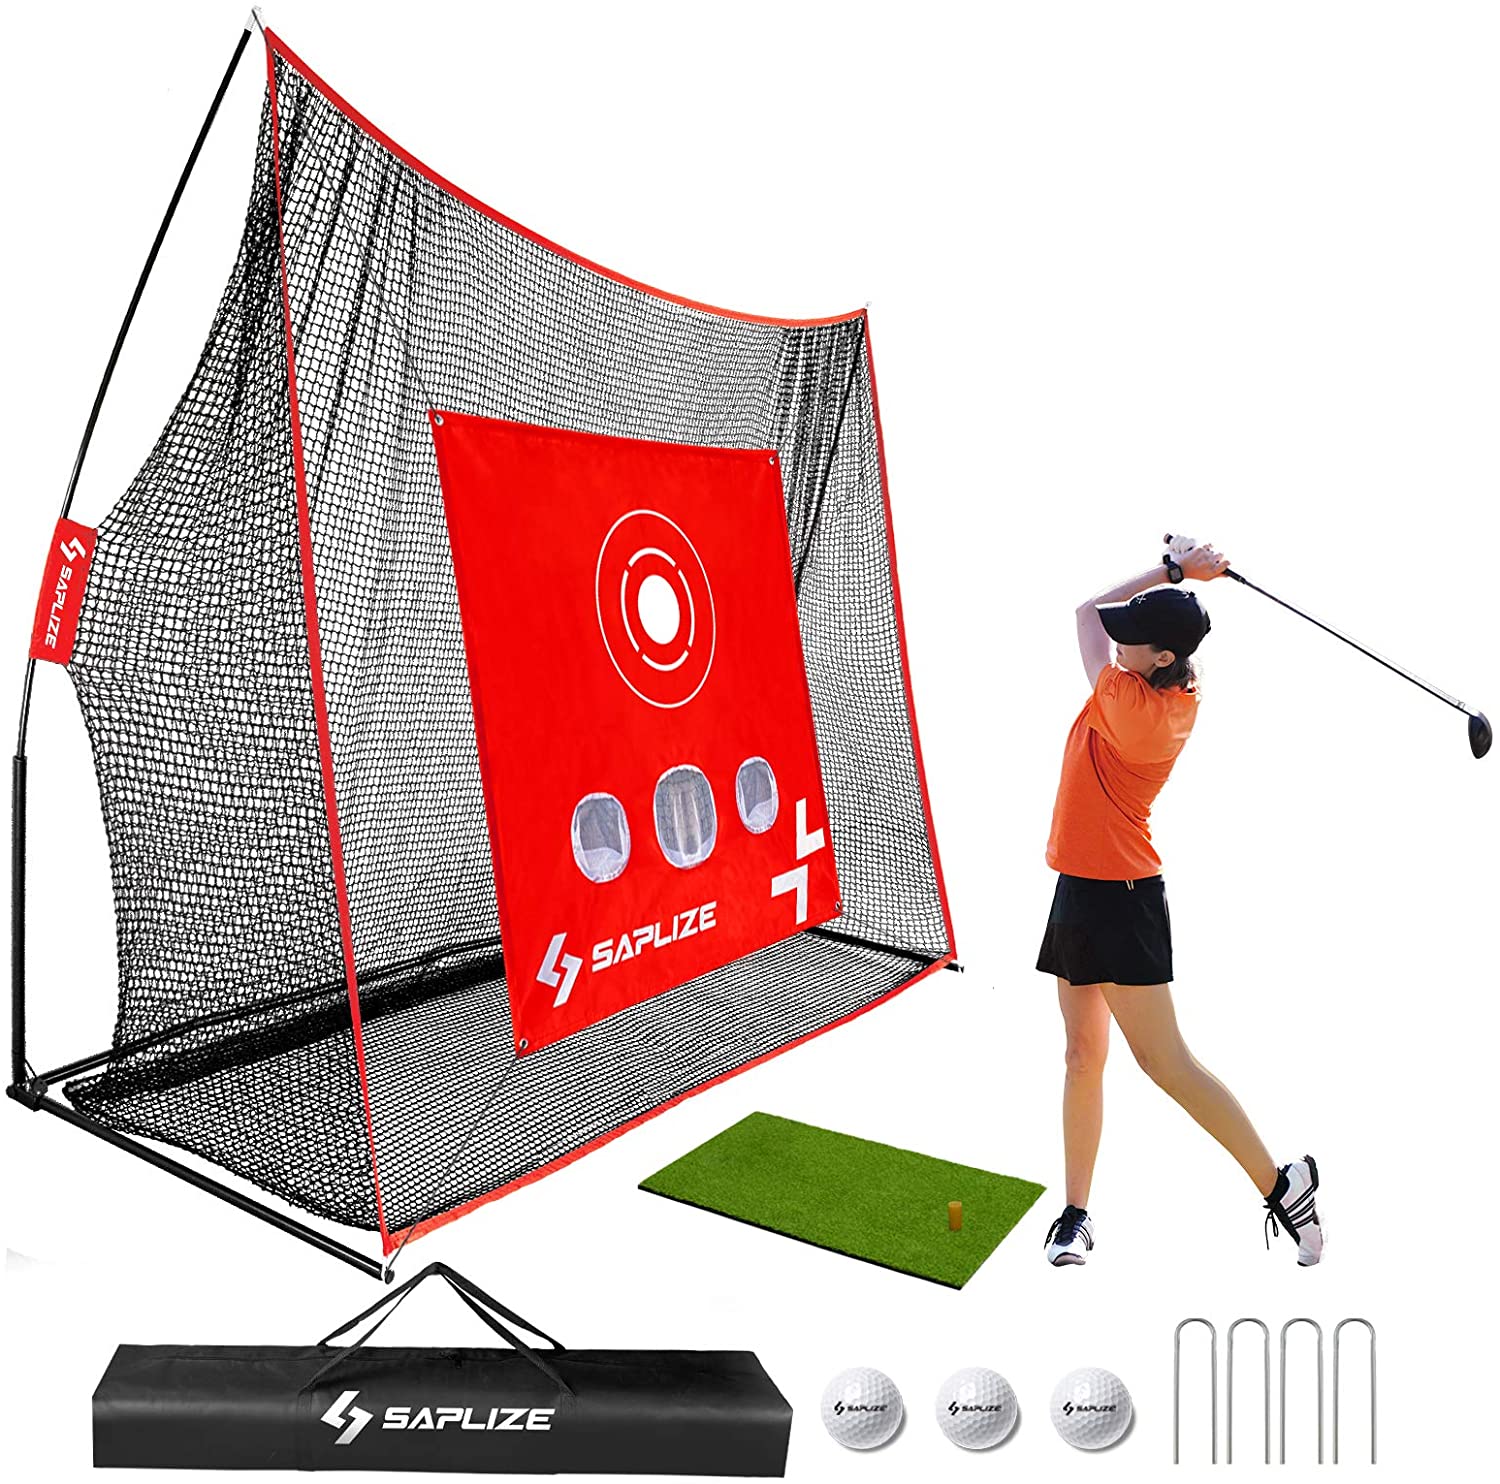 20% OFF SAPLIZE Golf Net with Hitting Mat, High Impact Golf Hitting Net